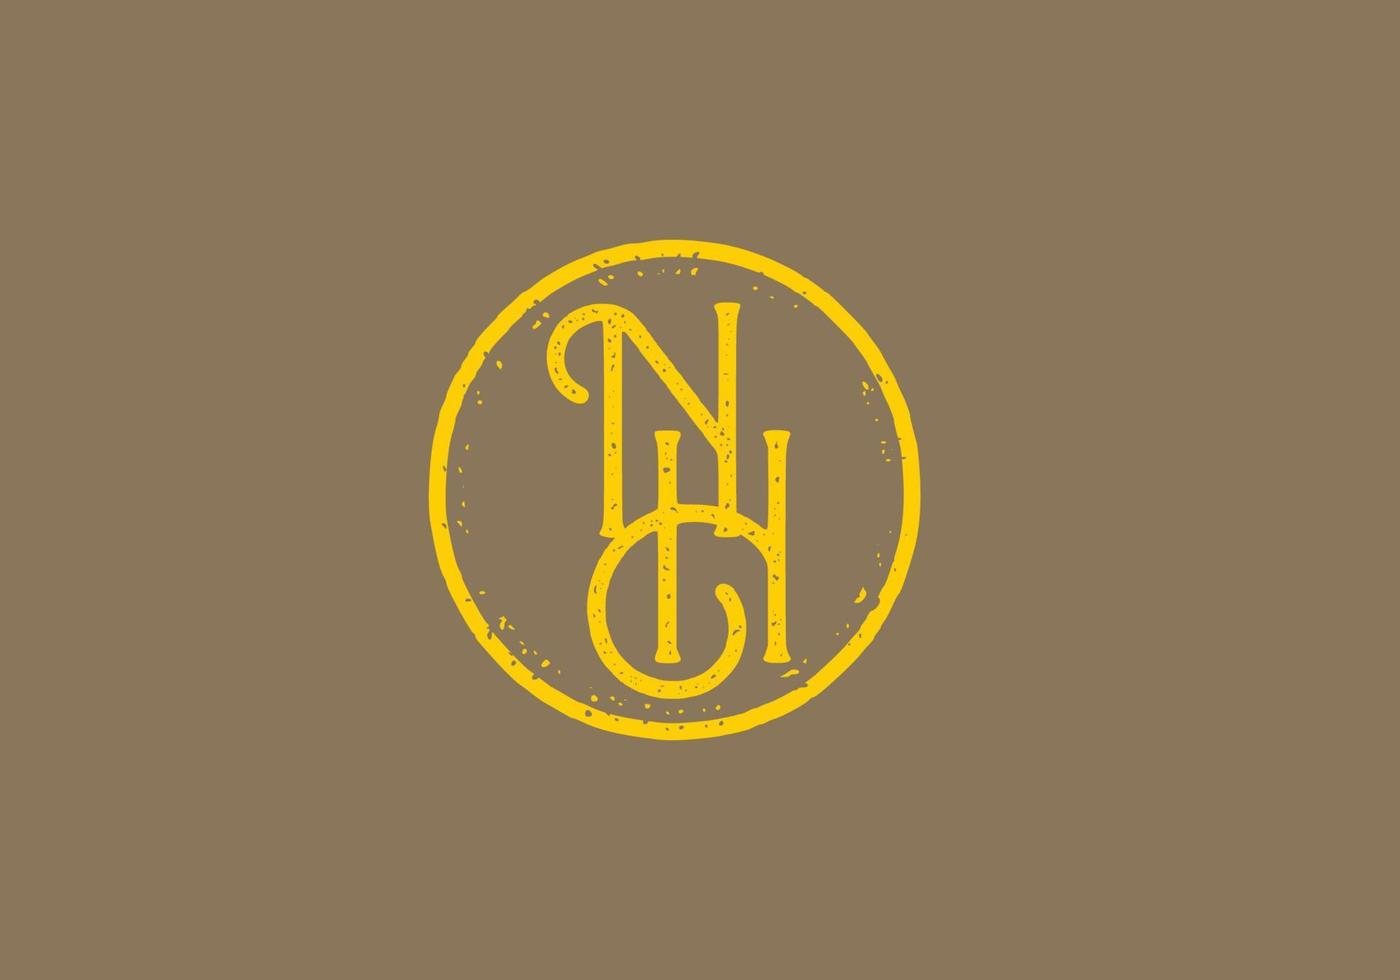 vintage-stil des nh-anfangsbuchstabens vektor